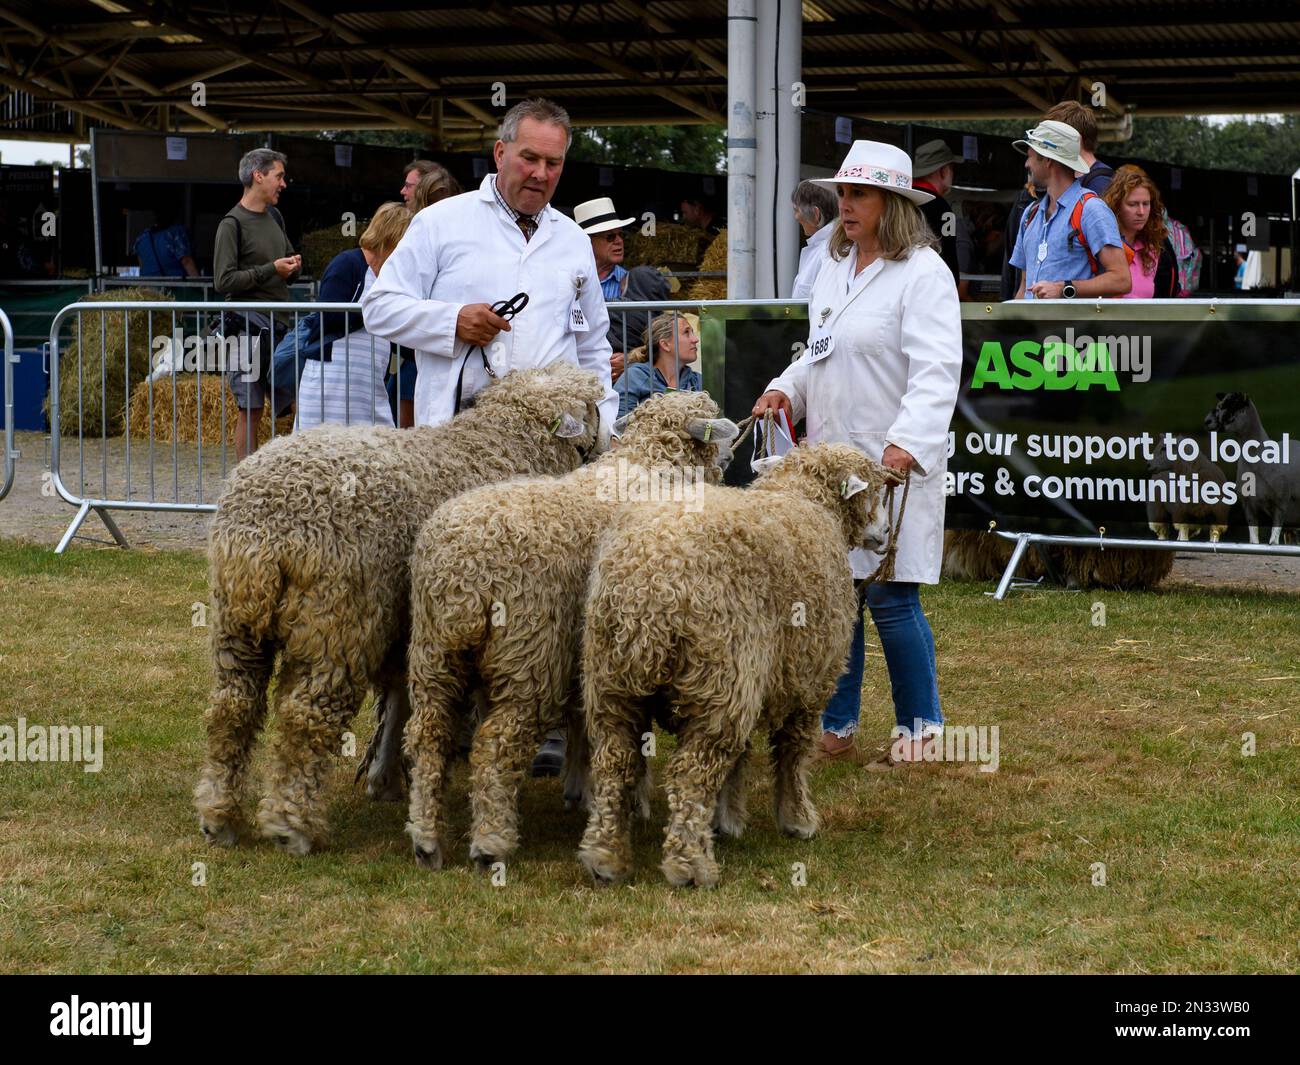 Les moutons de Lincoln Longwool (béliers de race rare prioritaire) se tiennent aux côtés des agriculteurs (homme femme) pour le jugement - The Great Yorkshire Show, Harrogate, Angleterre, Royaume-Uni. Banque D'Images